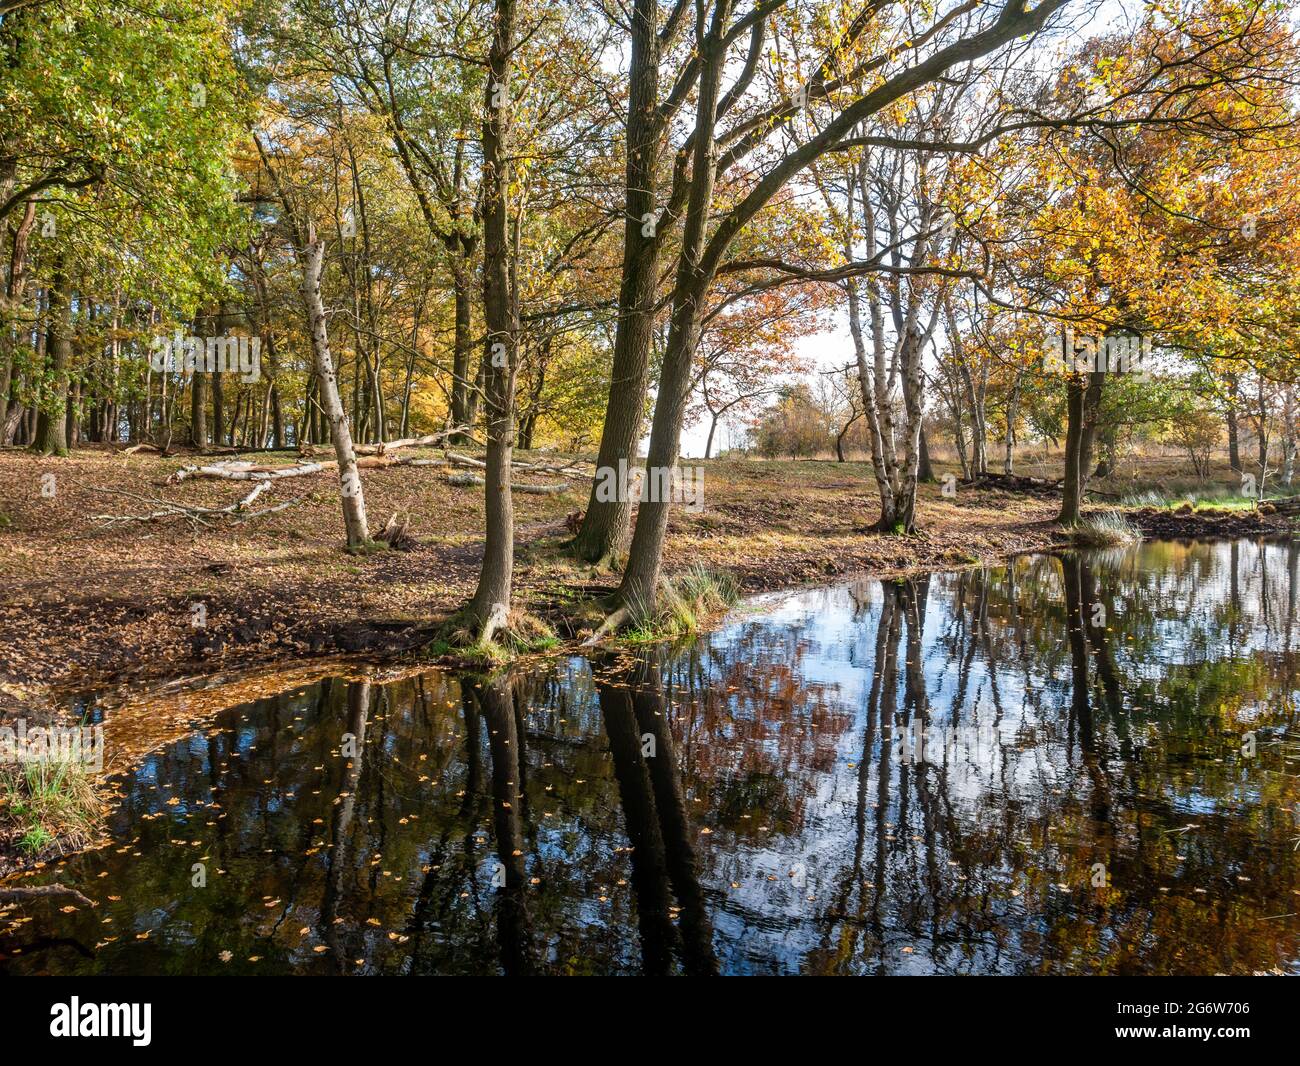 Piscine entourée d'arbres dans les landes de la réserve naturelle Takkenhoogte, Reestdal, Drenthe, pays-Bas Banque D'Images